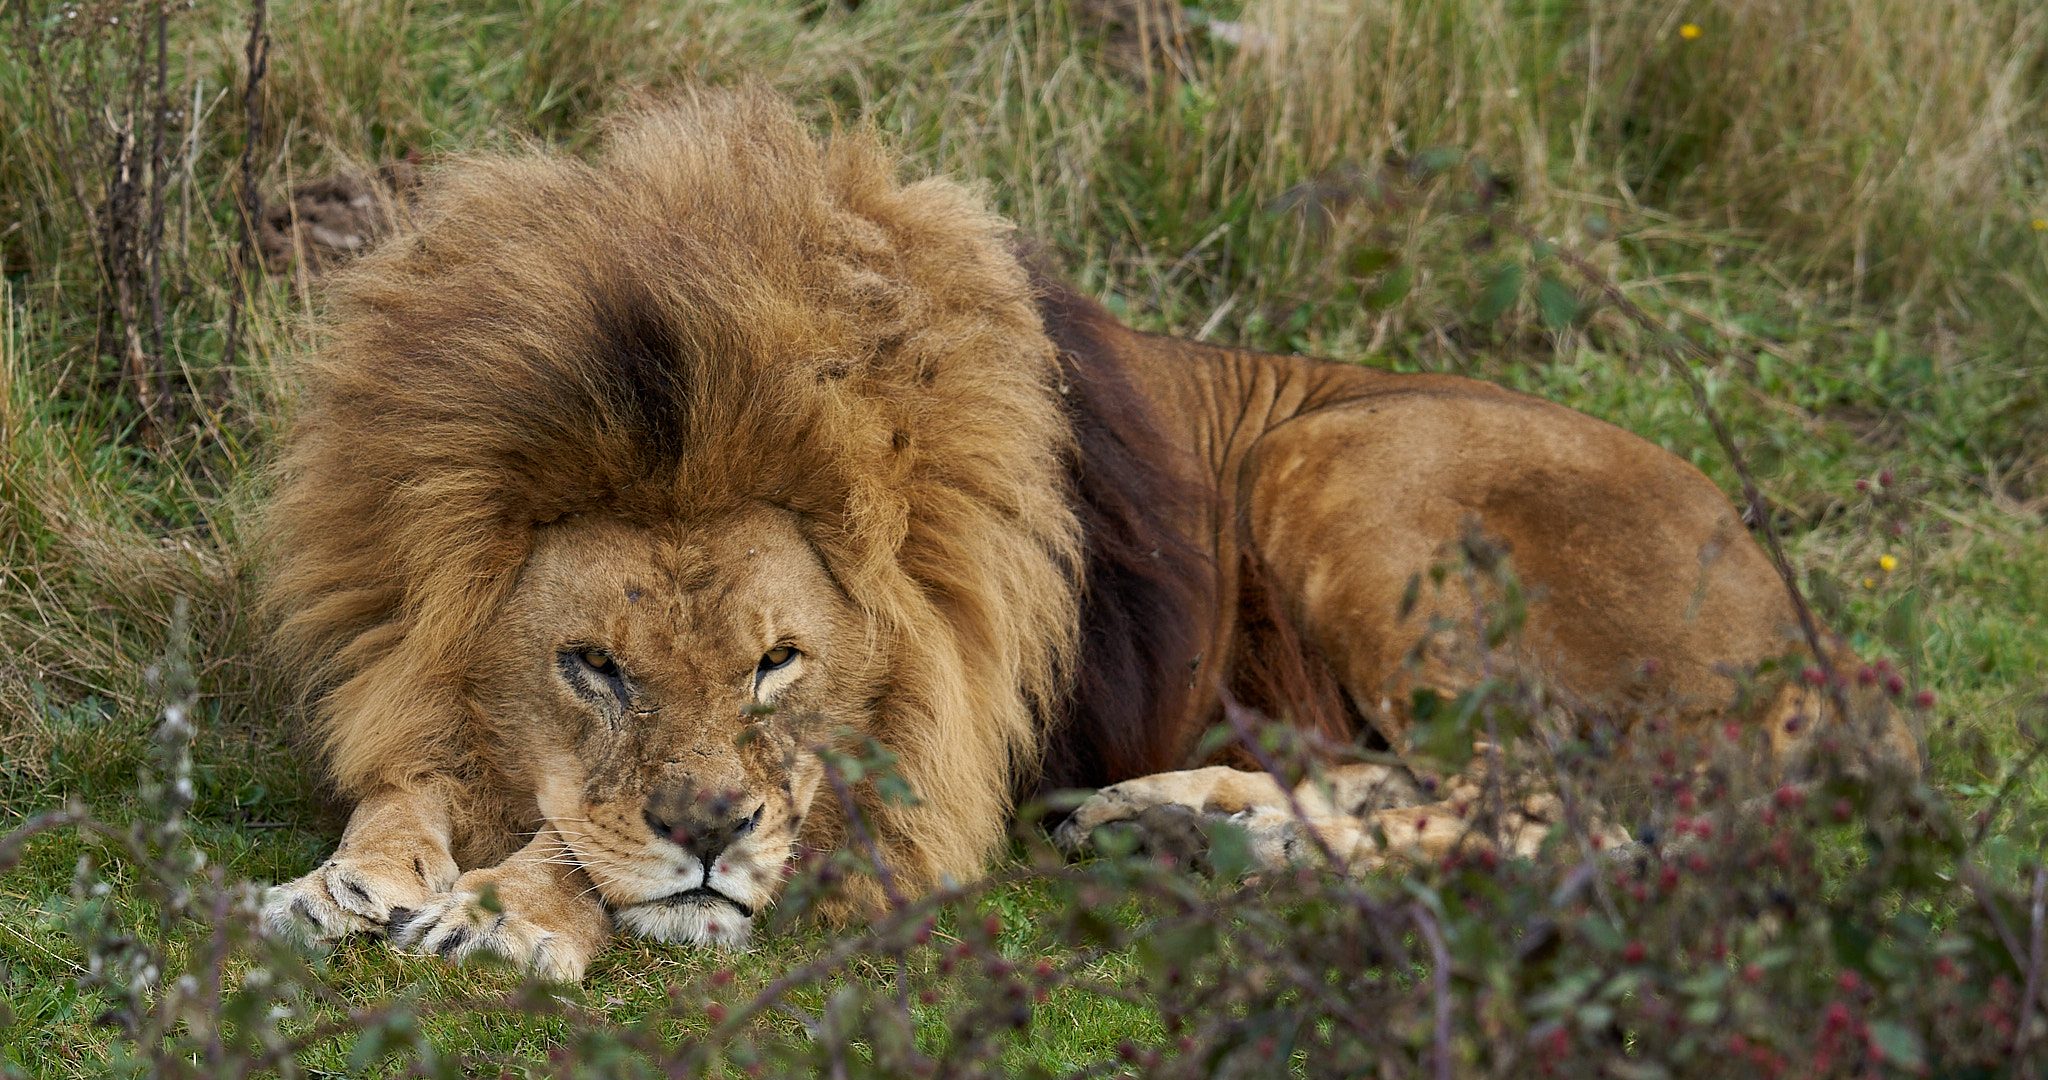 lion at rest 71.jpg